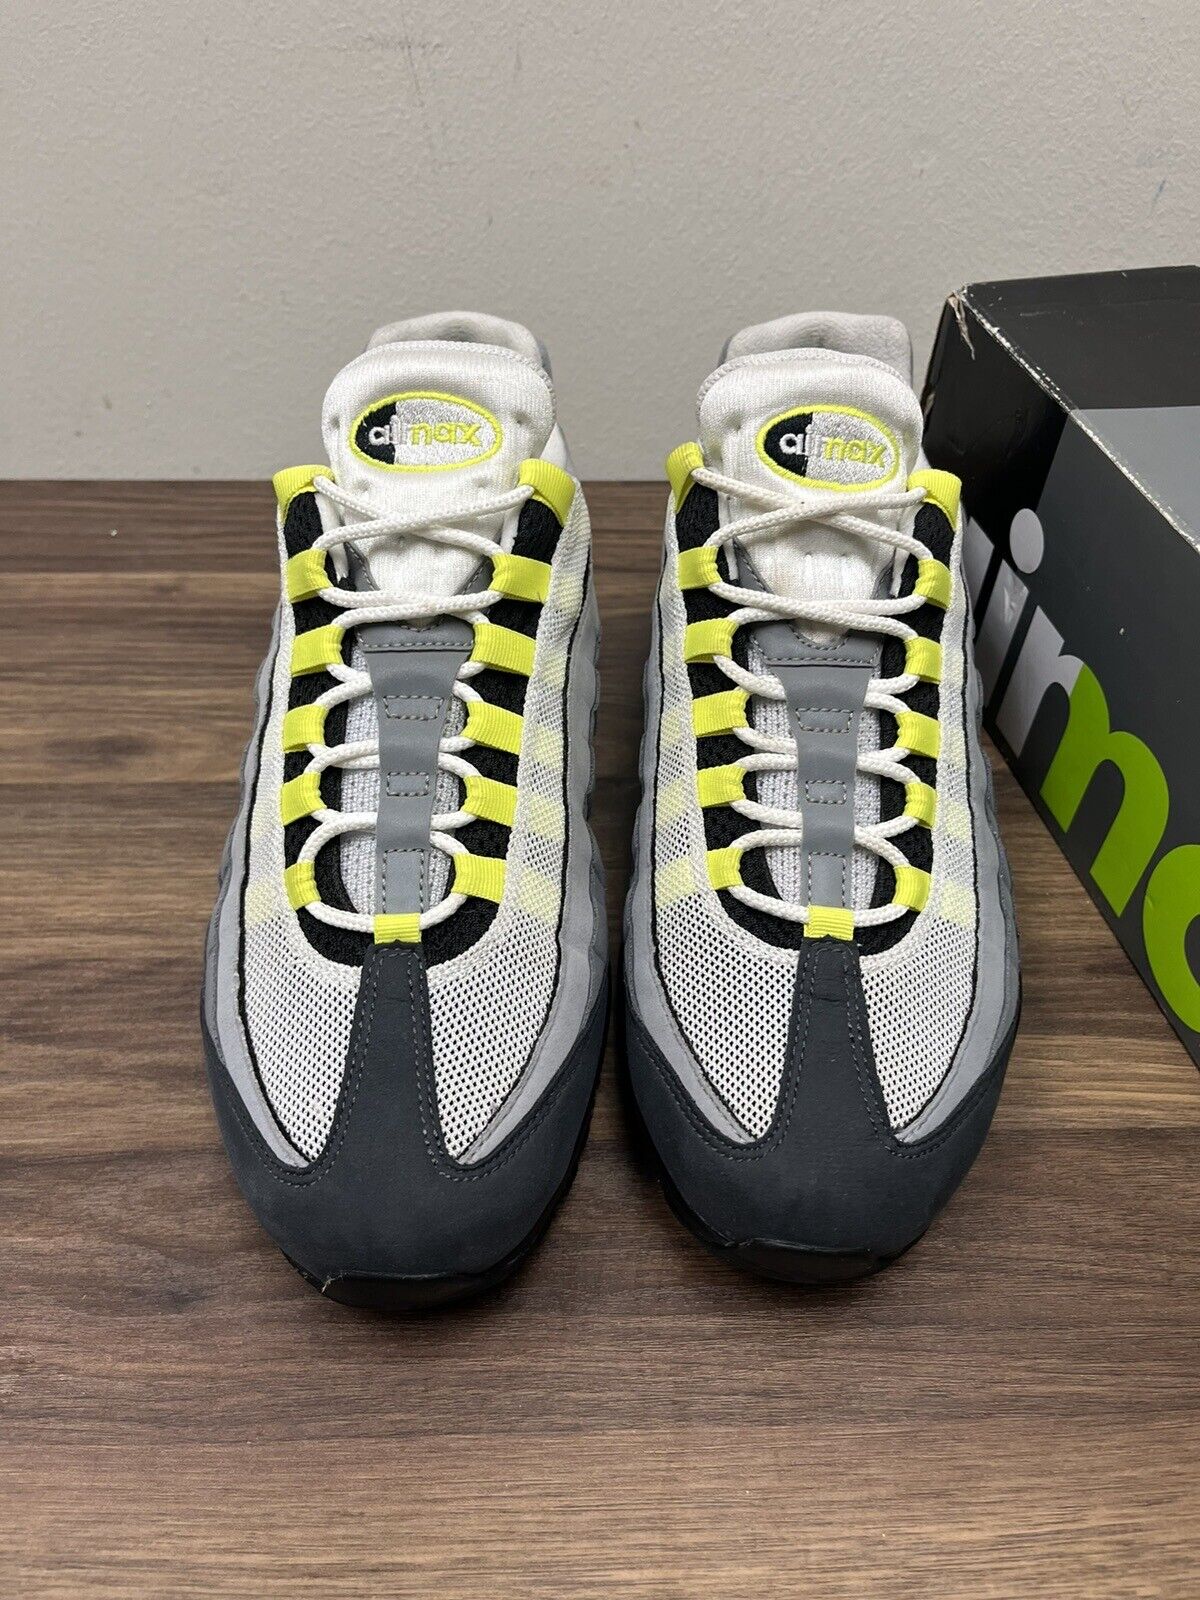 Nike Air Max 95 OG Neon 2020 Size 10 Og All